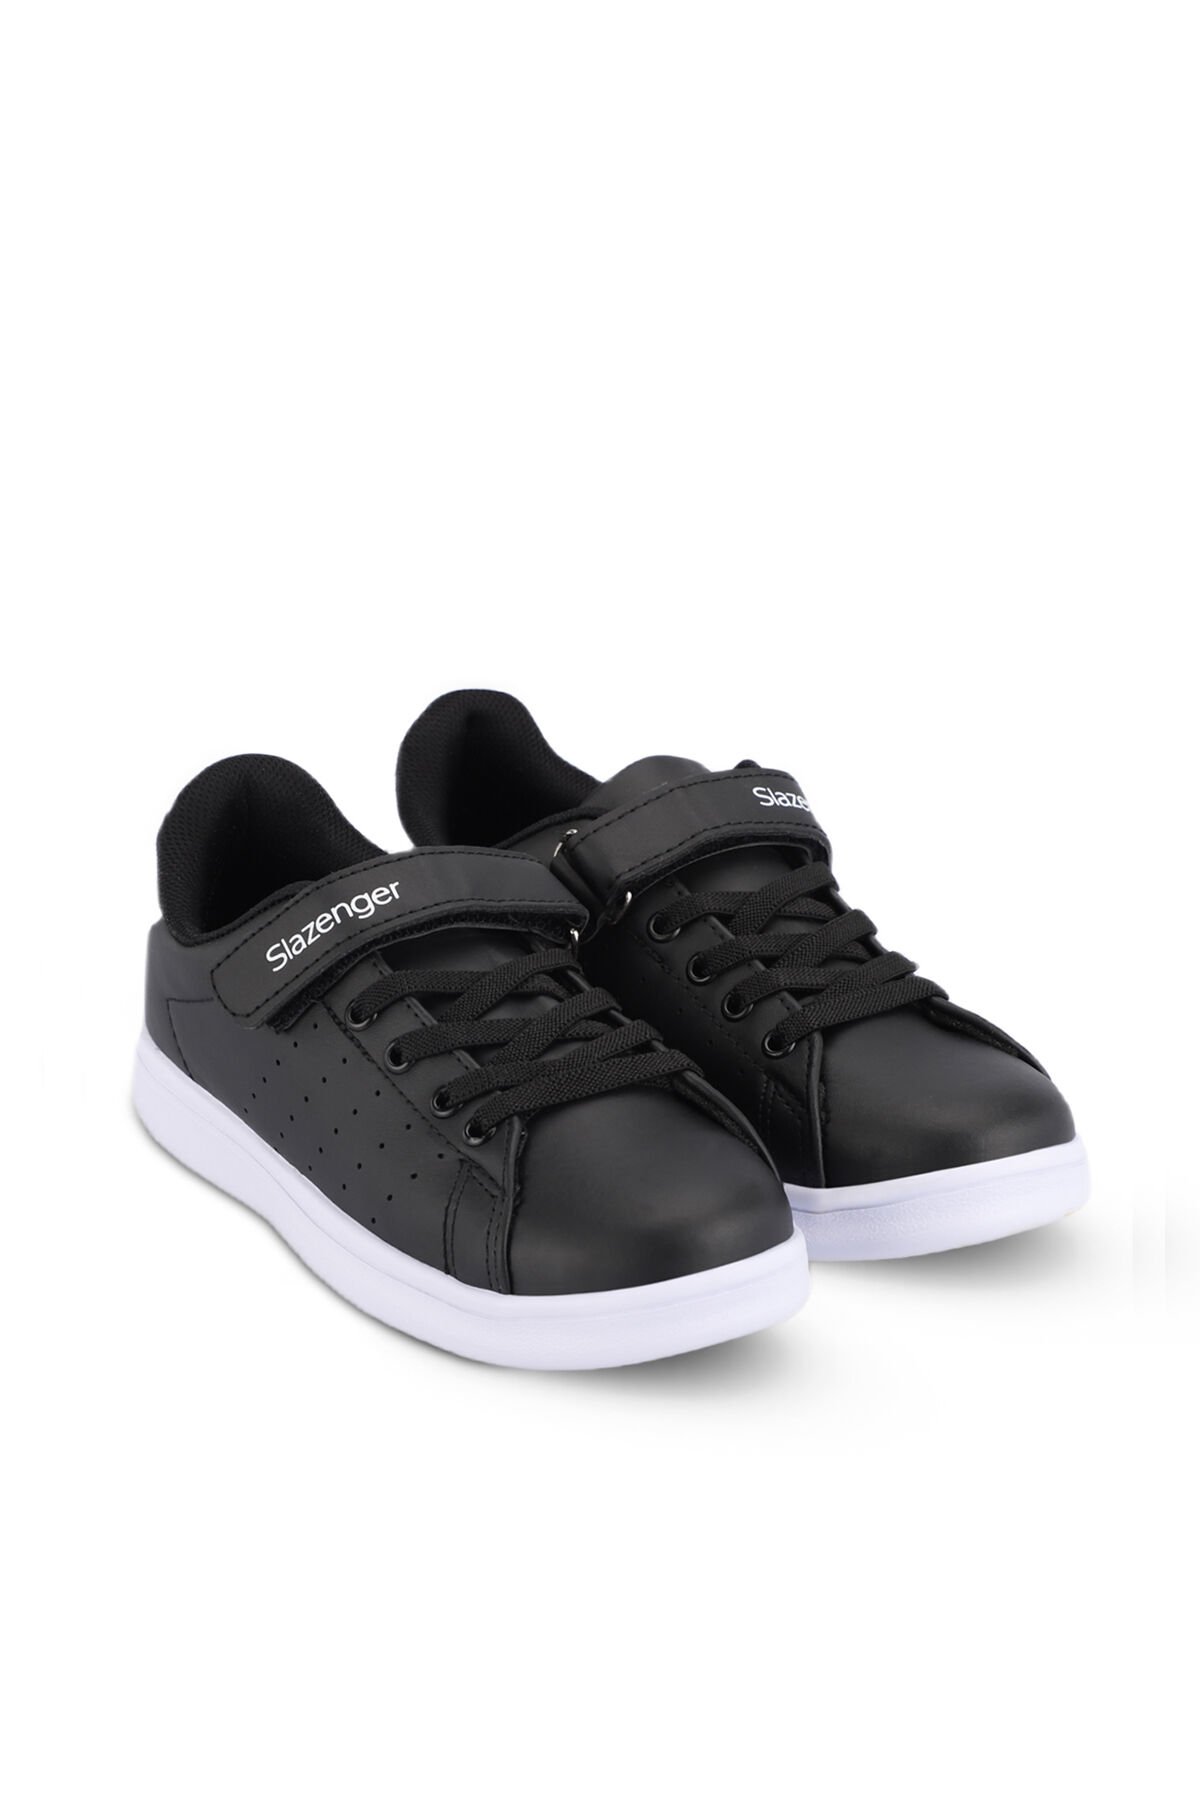 PIANO I Sneaker Unisex Ayakkabı Siyah / Beyaz - Thumbnail